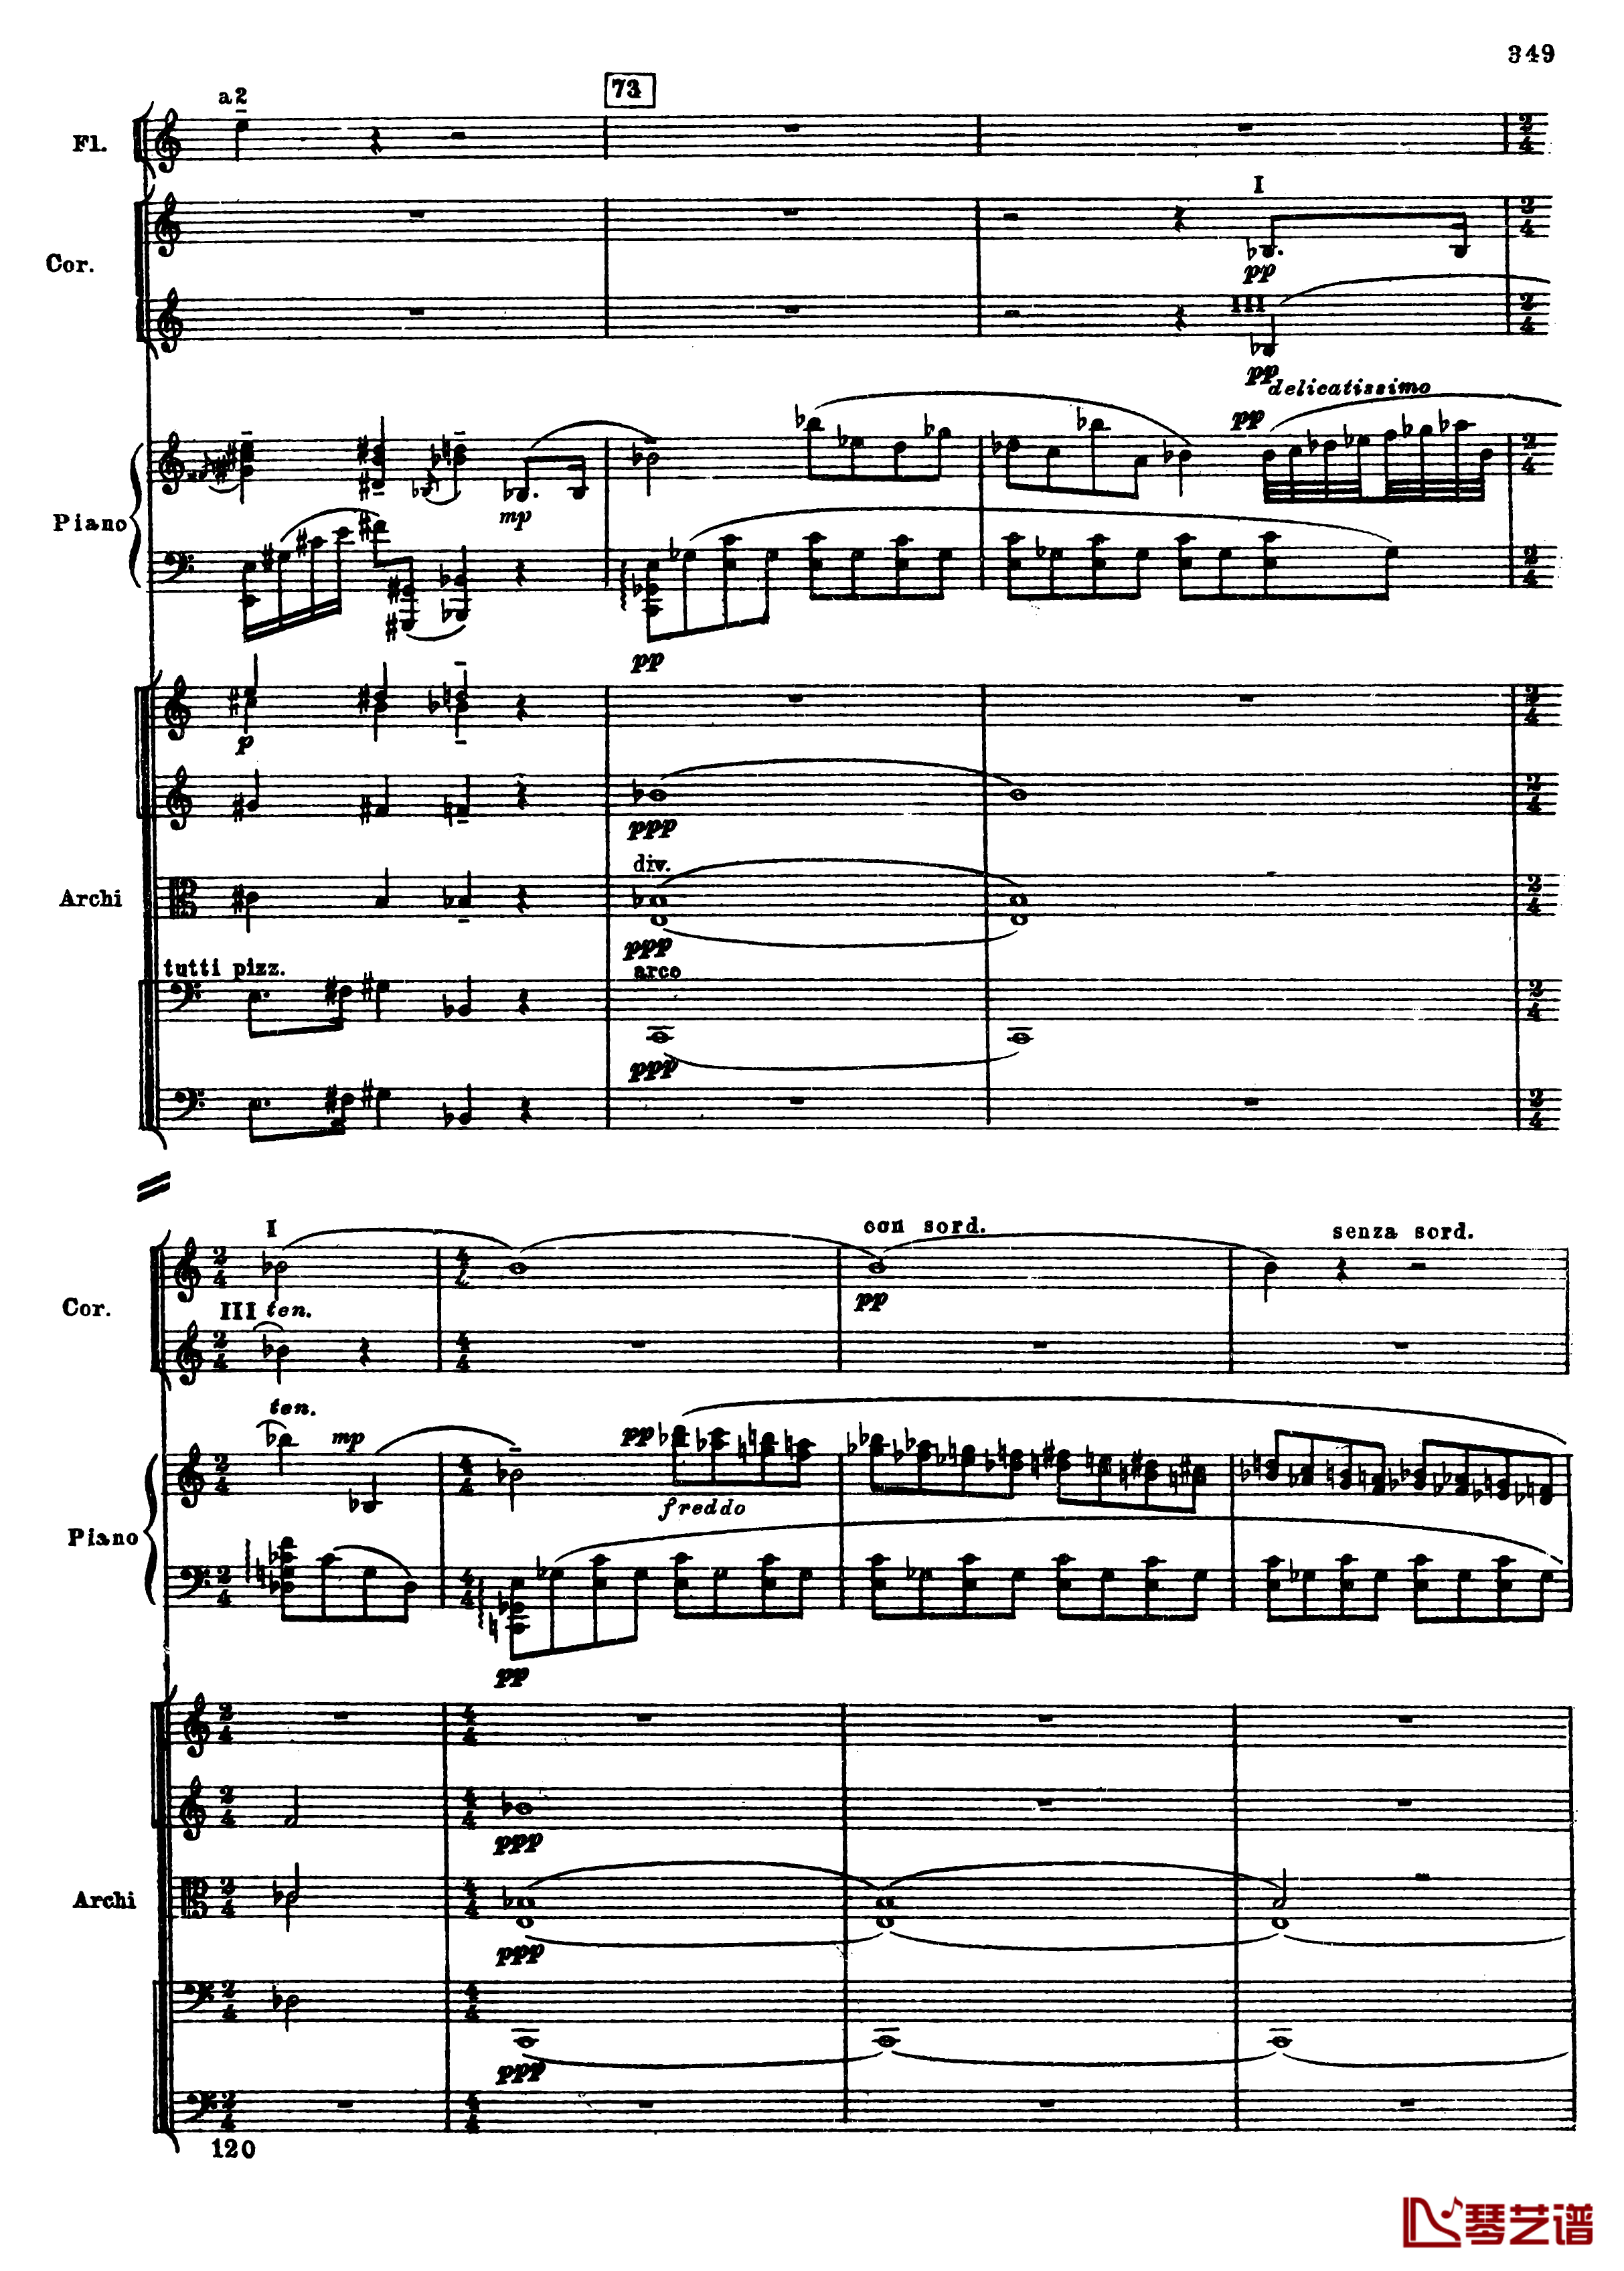 普罗科菲耶夫第三钢琴协奏曲钢琴谱-总谱-普罗科非耶夫81